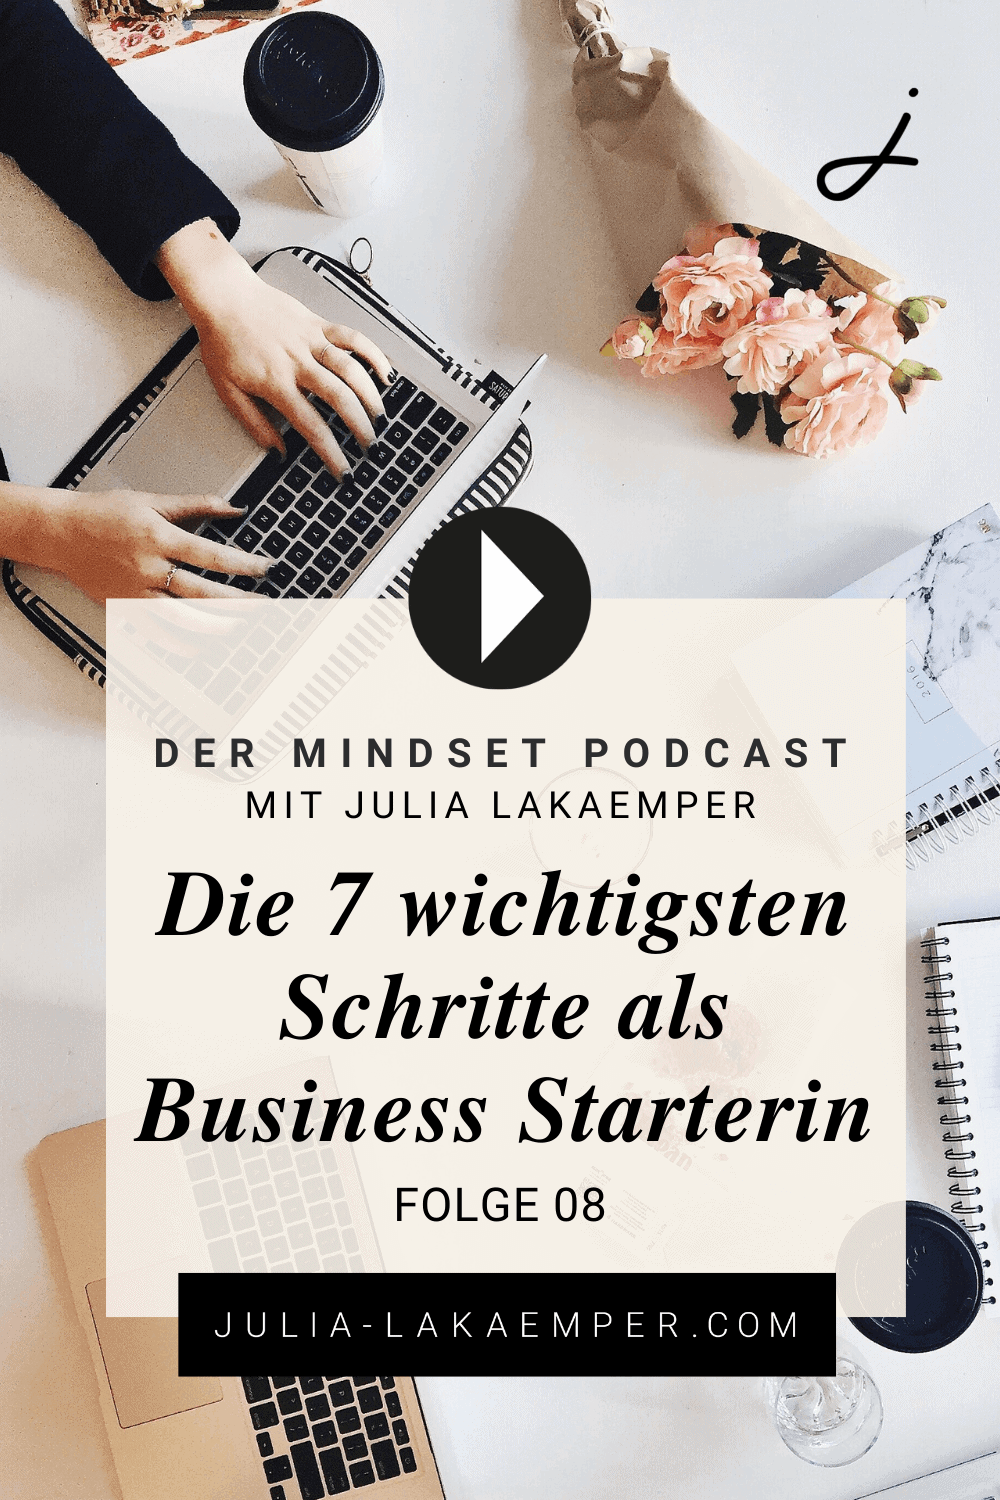 Pinterest Pin zum Podcast-Folge #8"Die 7 wichtigsten Schritte als Business Starterin"